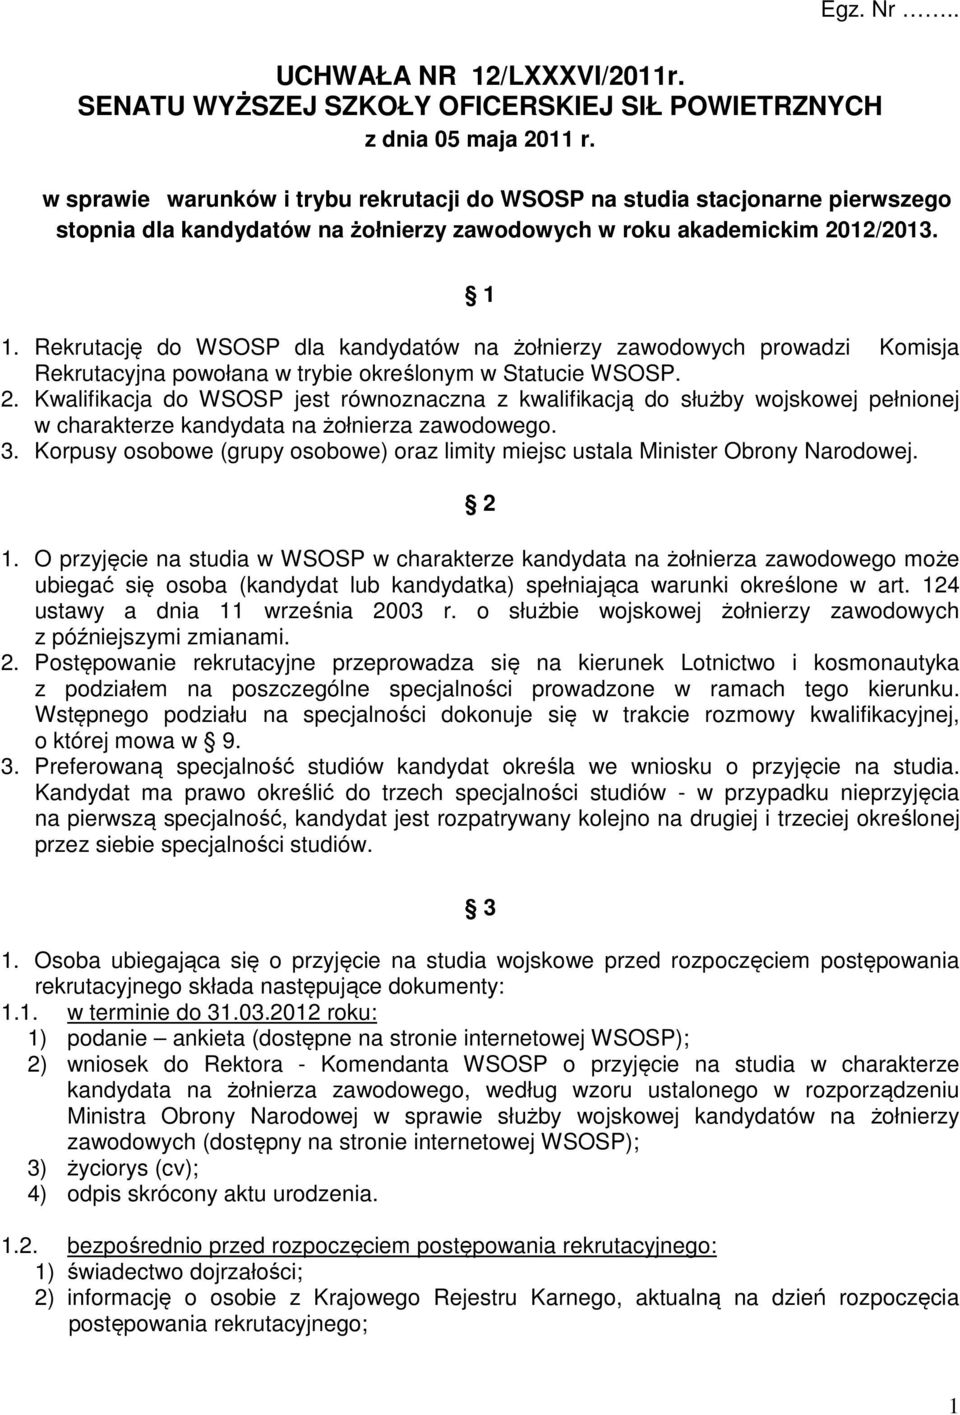 Rekrutację do WSOSP dla kandydatów na żołnierzy zawodowych prowadzi Komisja Rekrutacyjna powołana w trybie określonym w Statucie WSOSP. 2.